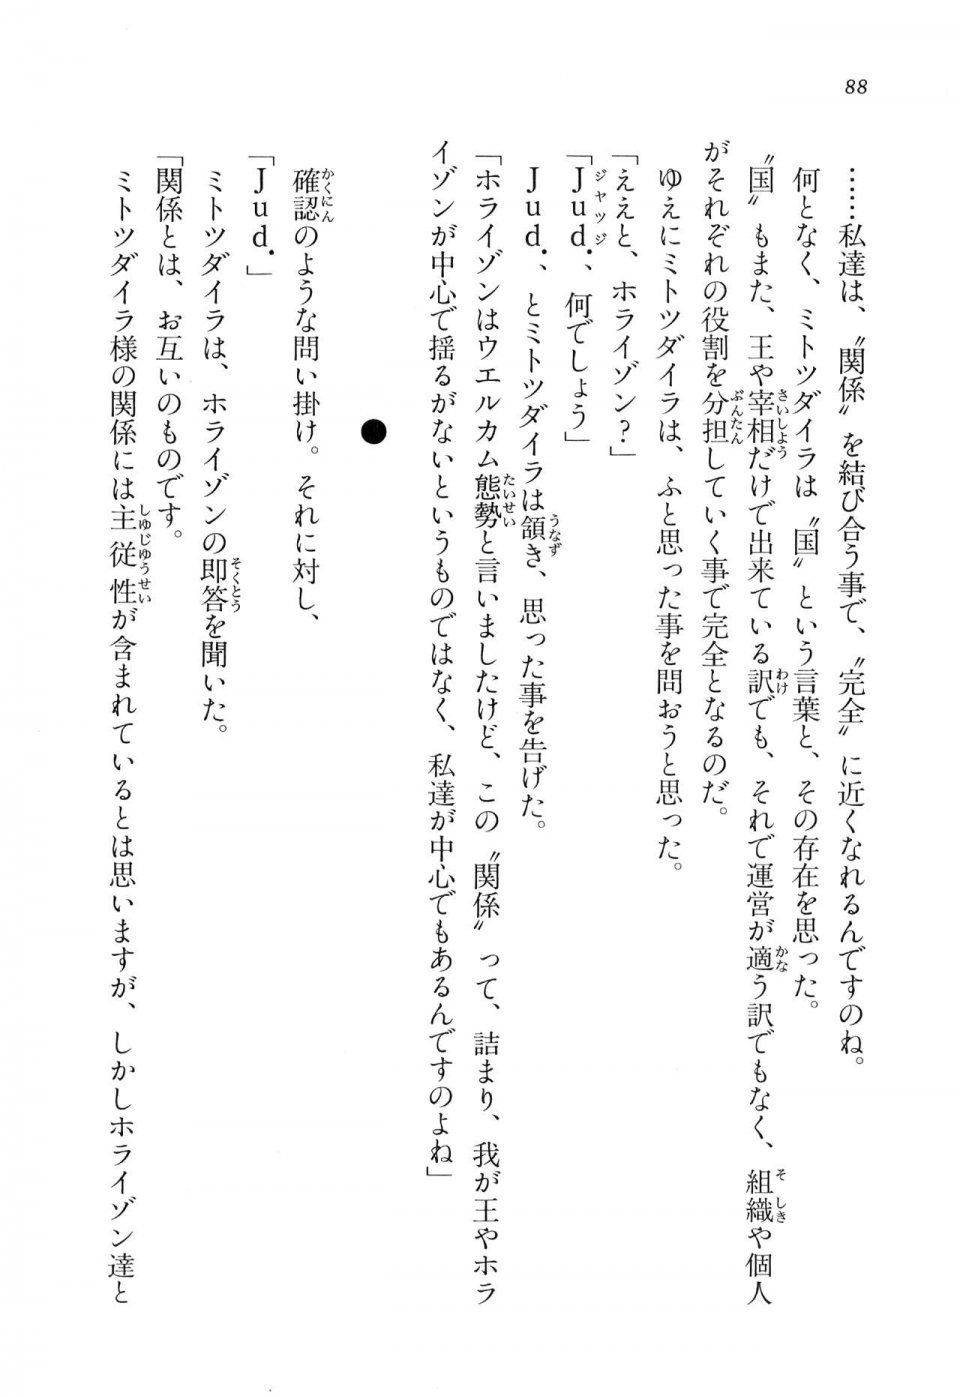 Kyoukai Senjou no Horizon LN Vol 16(7A) - Photo #88